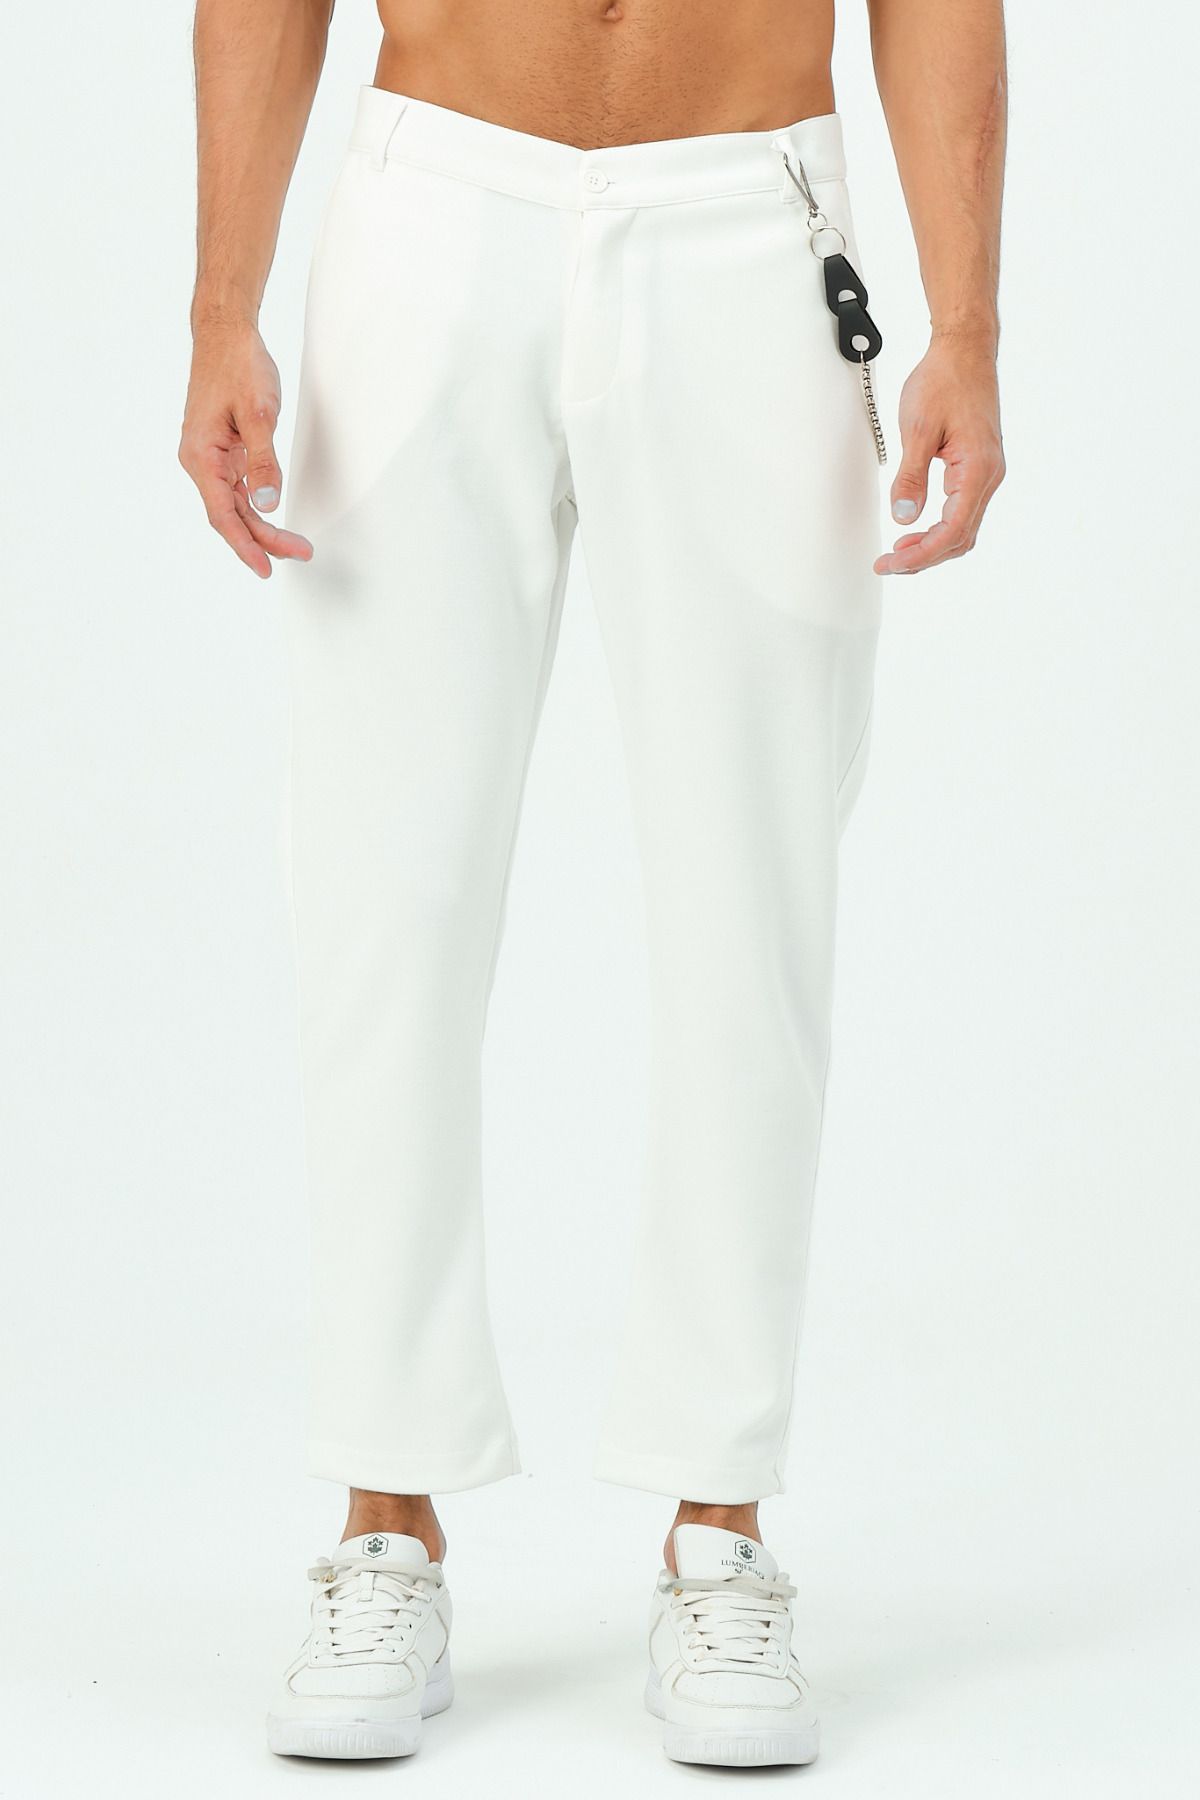 RELAXL % 100 Pamuk Scuba Dalgıç Tok Kumaş Regular Fit Erkek Beyaz Zincirli Pantolon